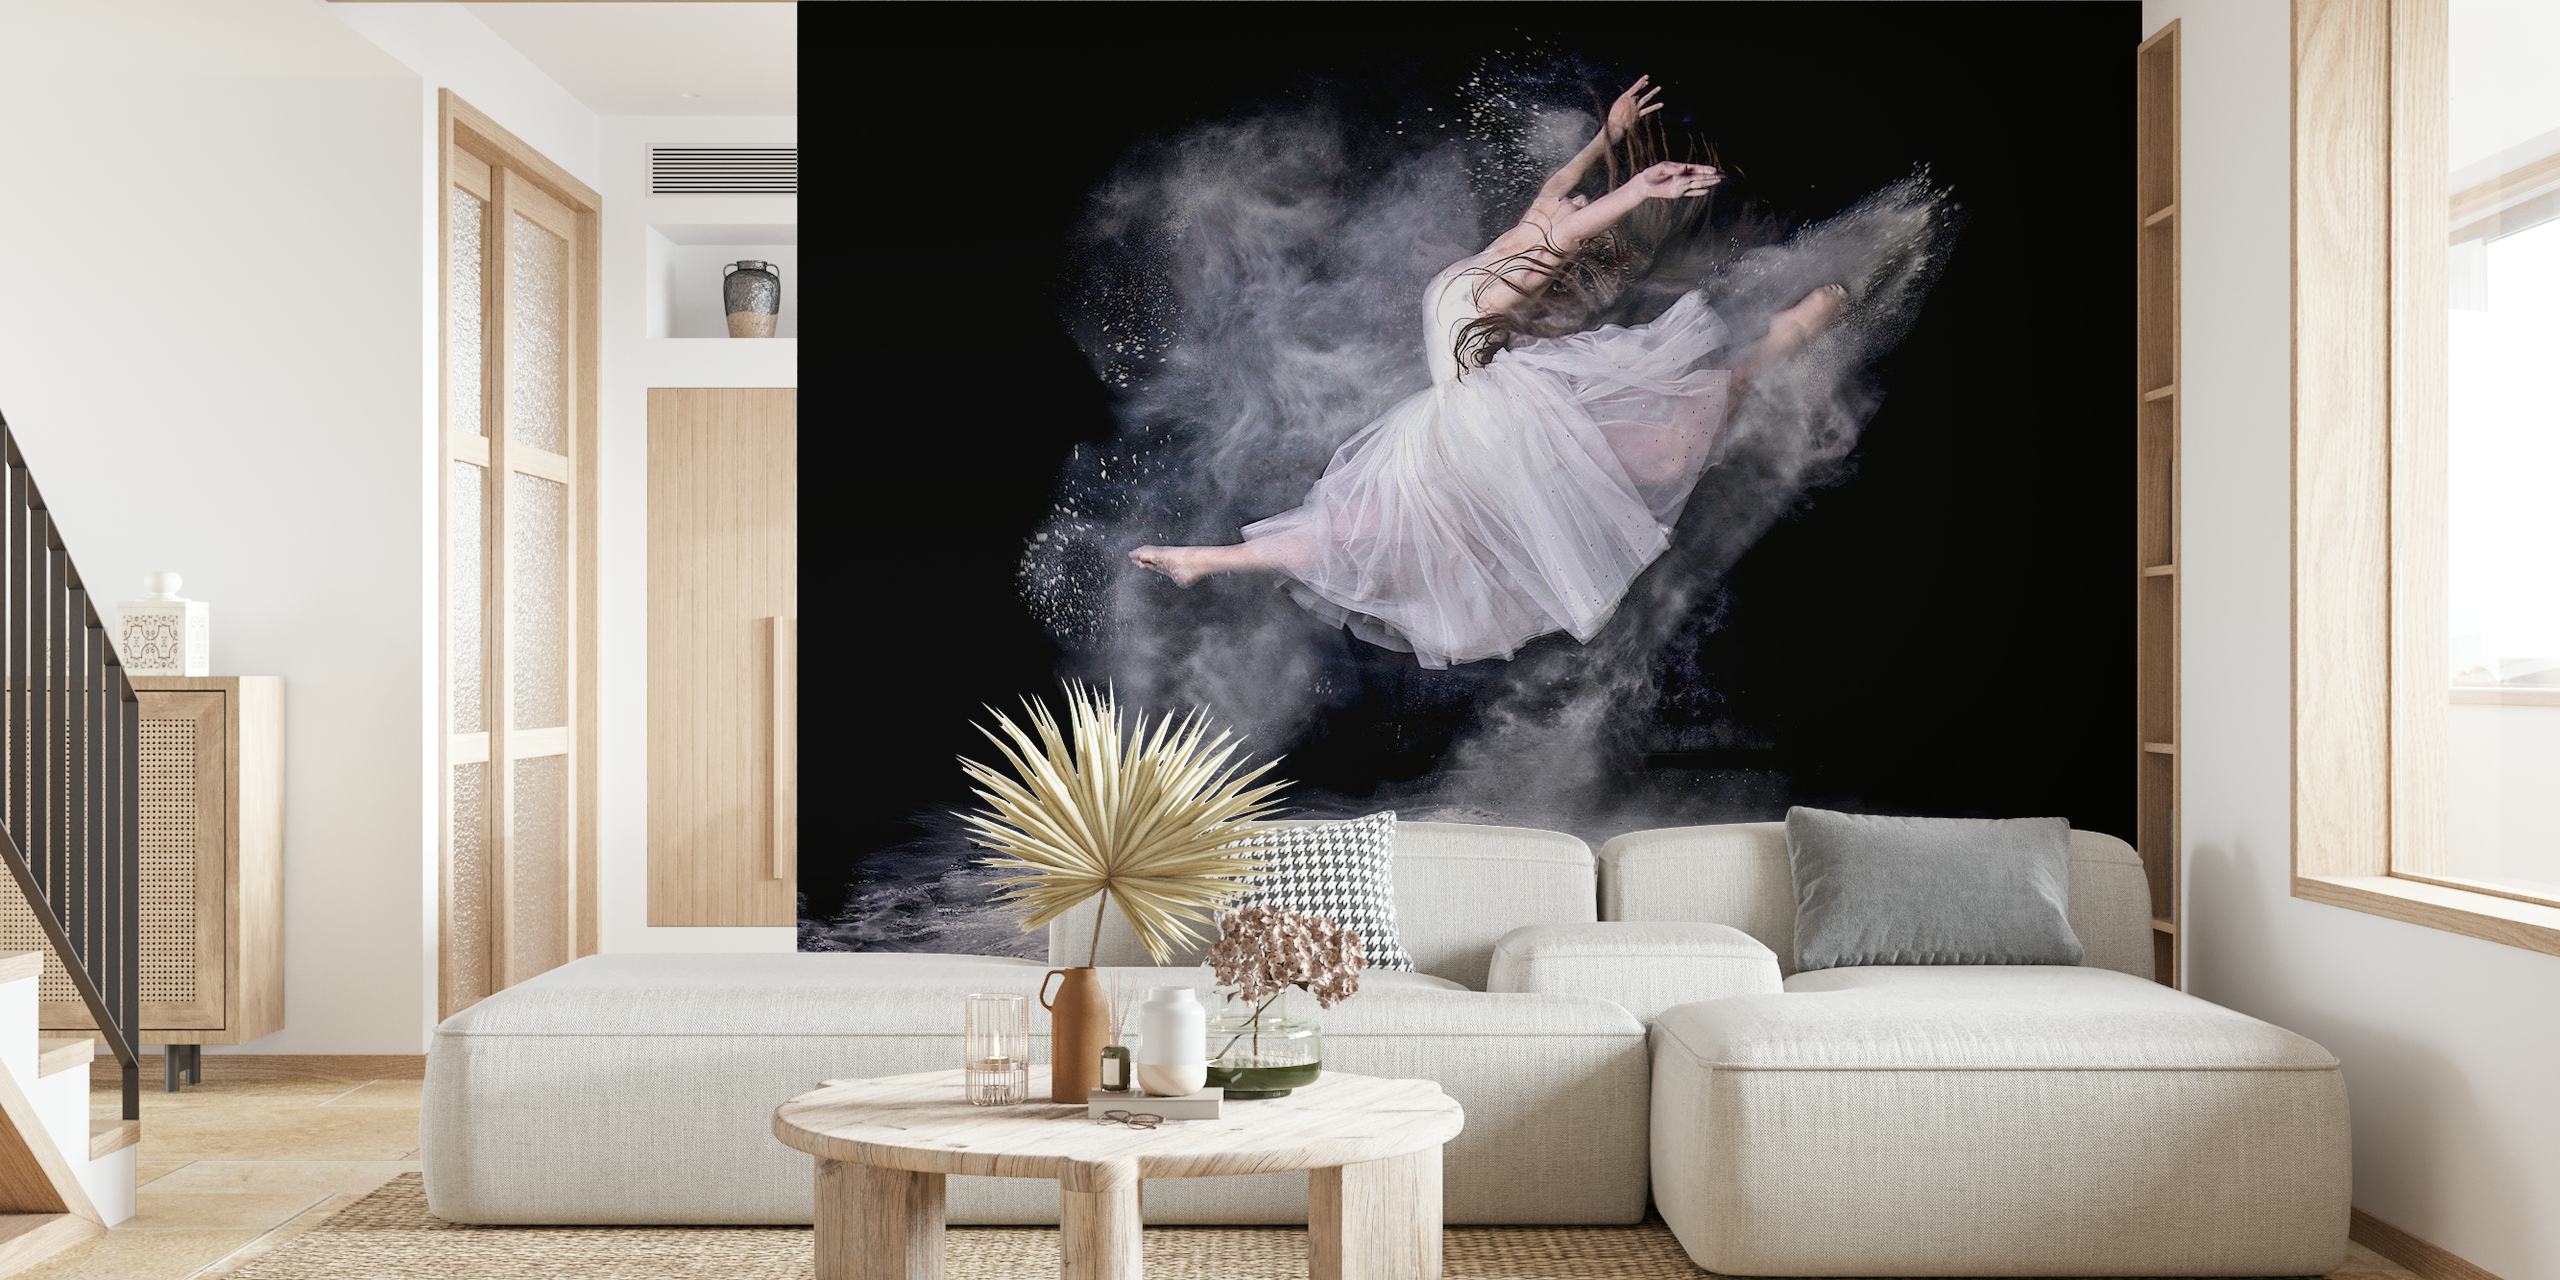 Tancerka baletowa we mgle to fototapeta do dekoracji wnętrz